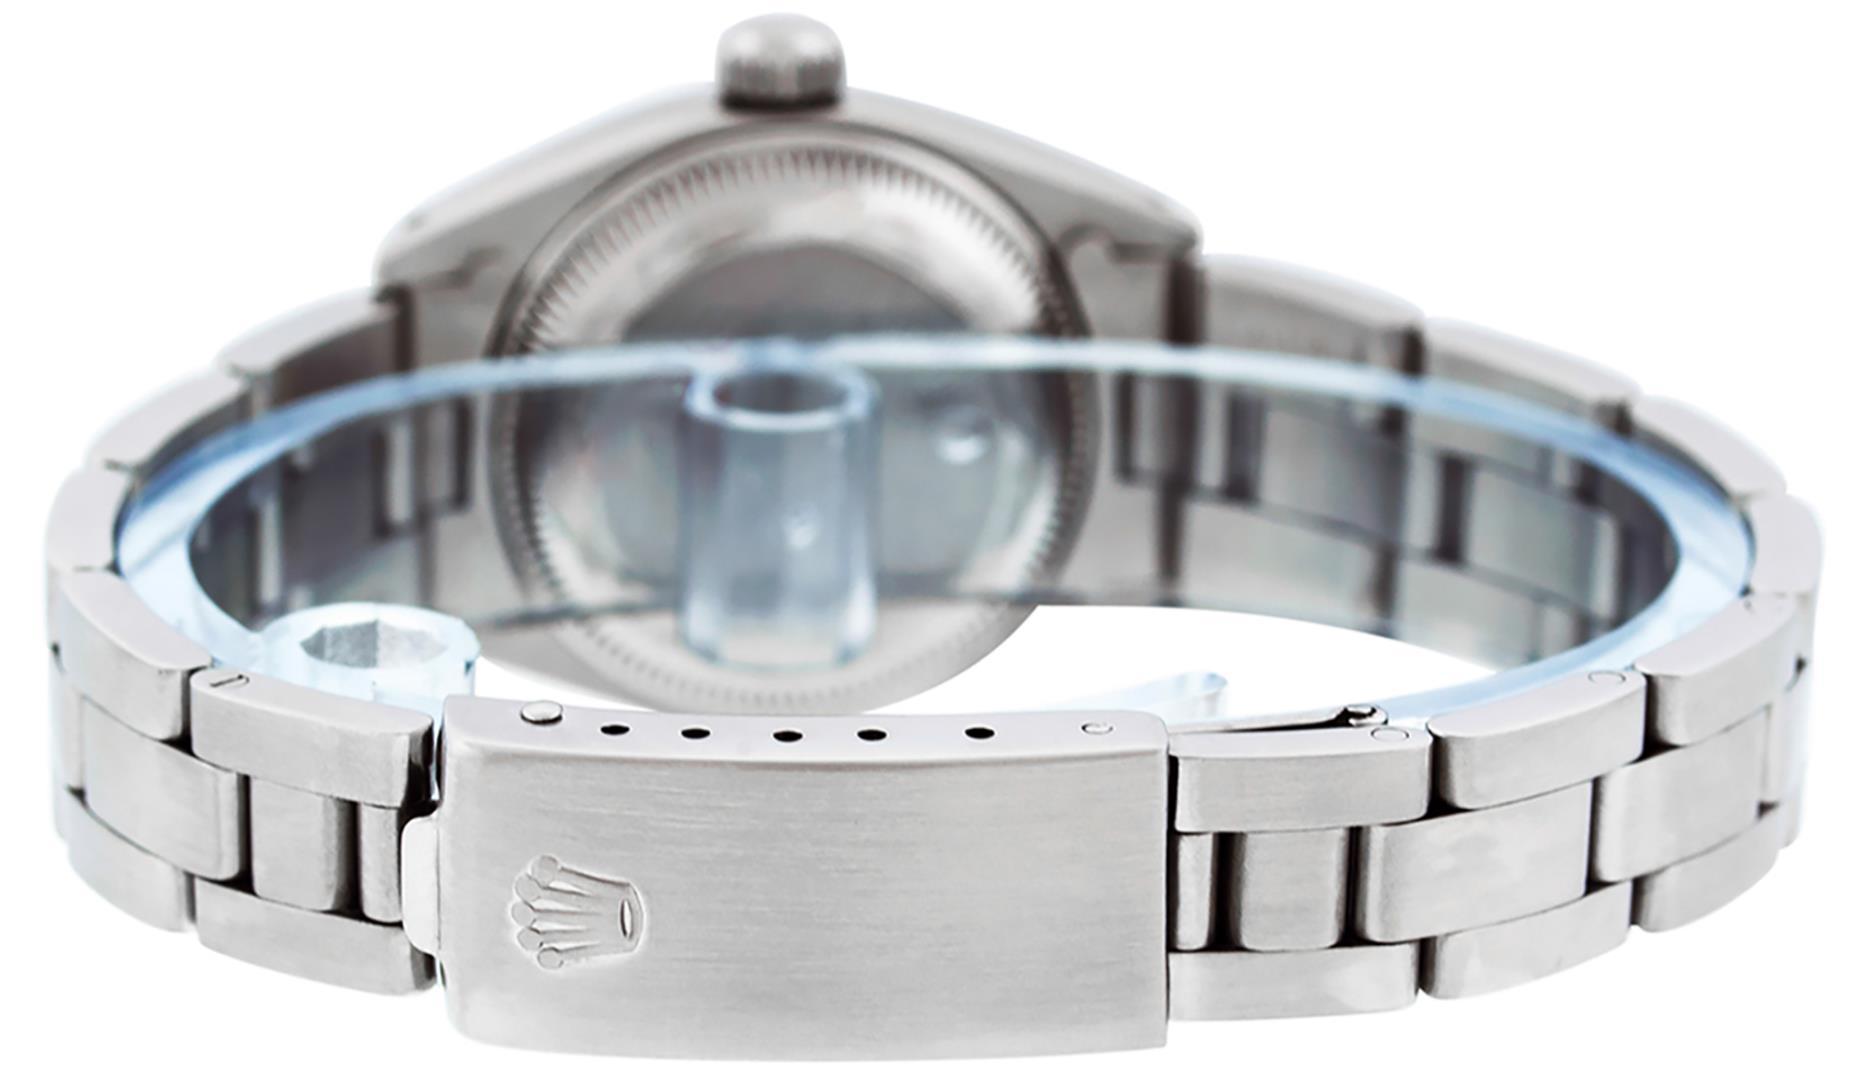 Rolex Ladies Stainless Steel Silver Index Date Wristwatch